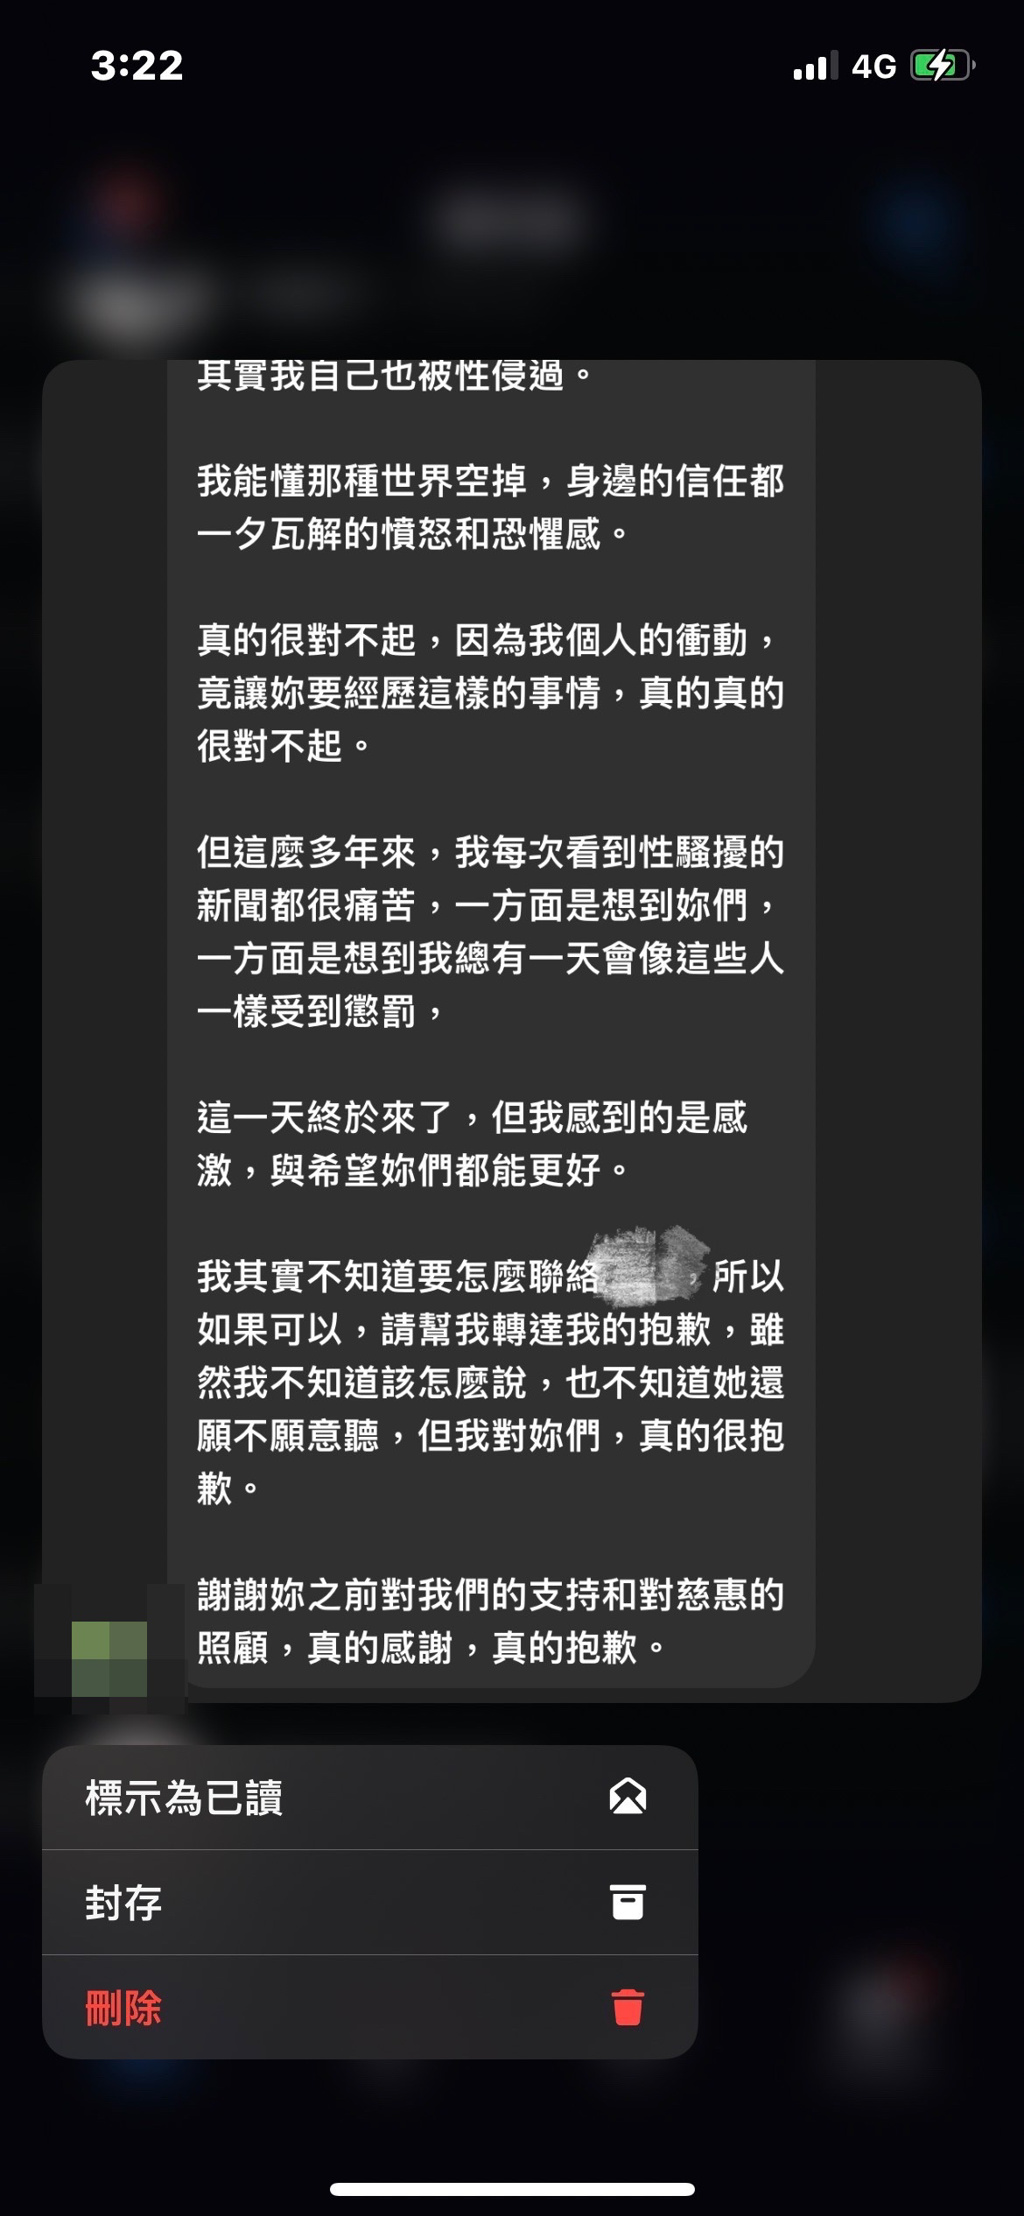 宥胜向揭露他性骚扰的网友发私讯再道歉，并称自己曾被性骚扰。